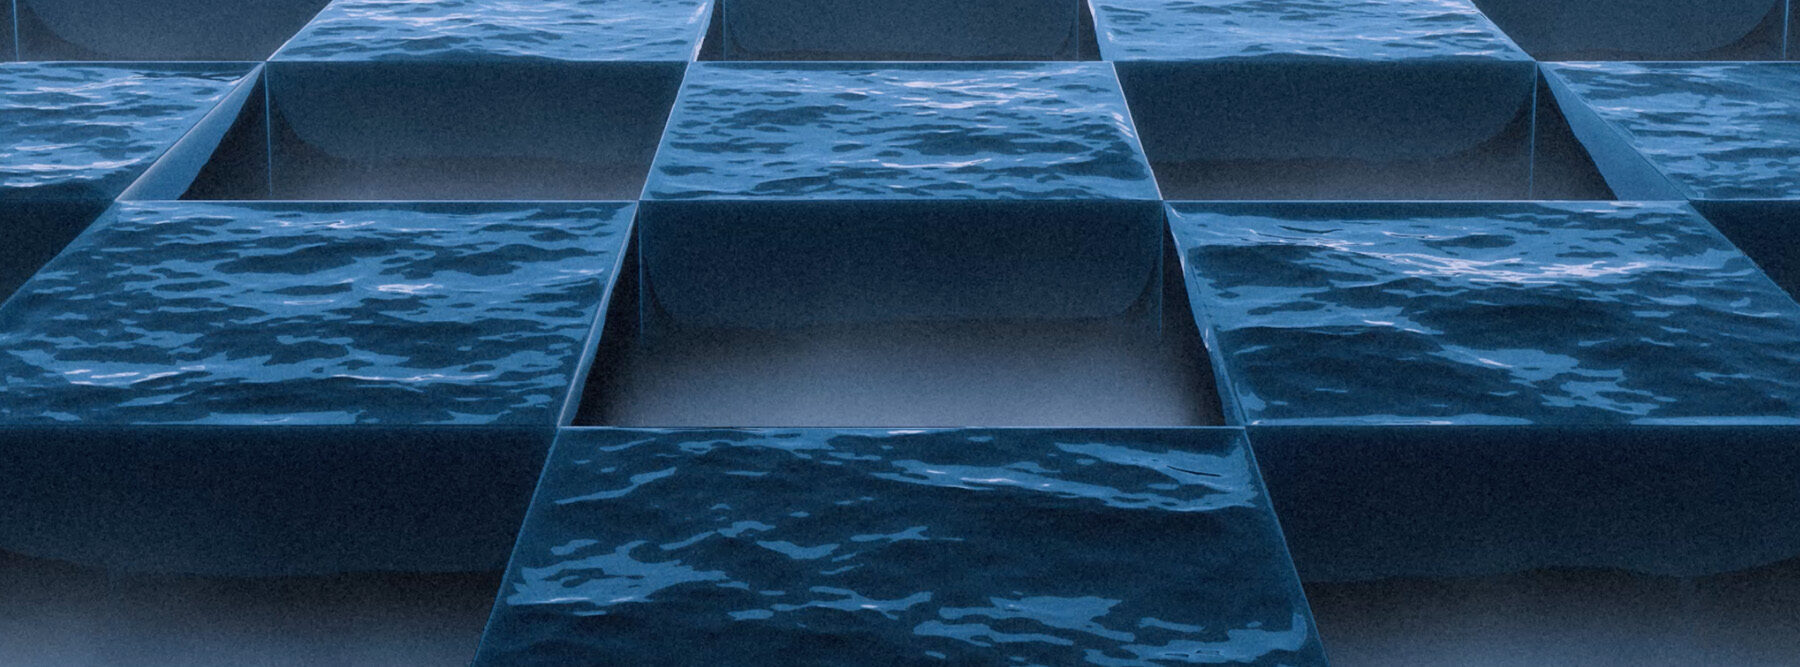 Checkerboard Sea by Hayden Clay